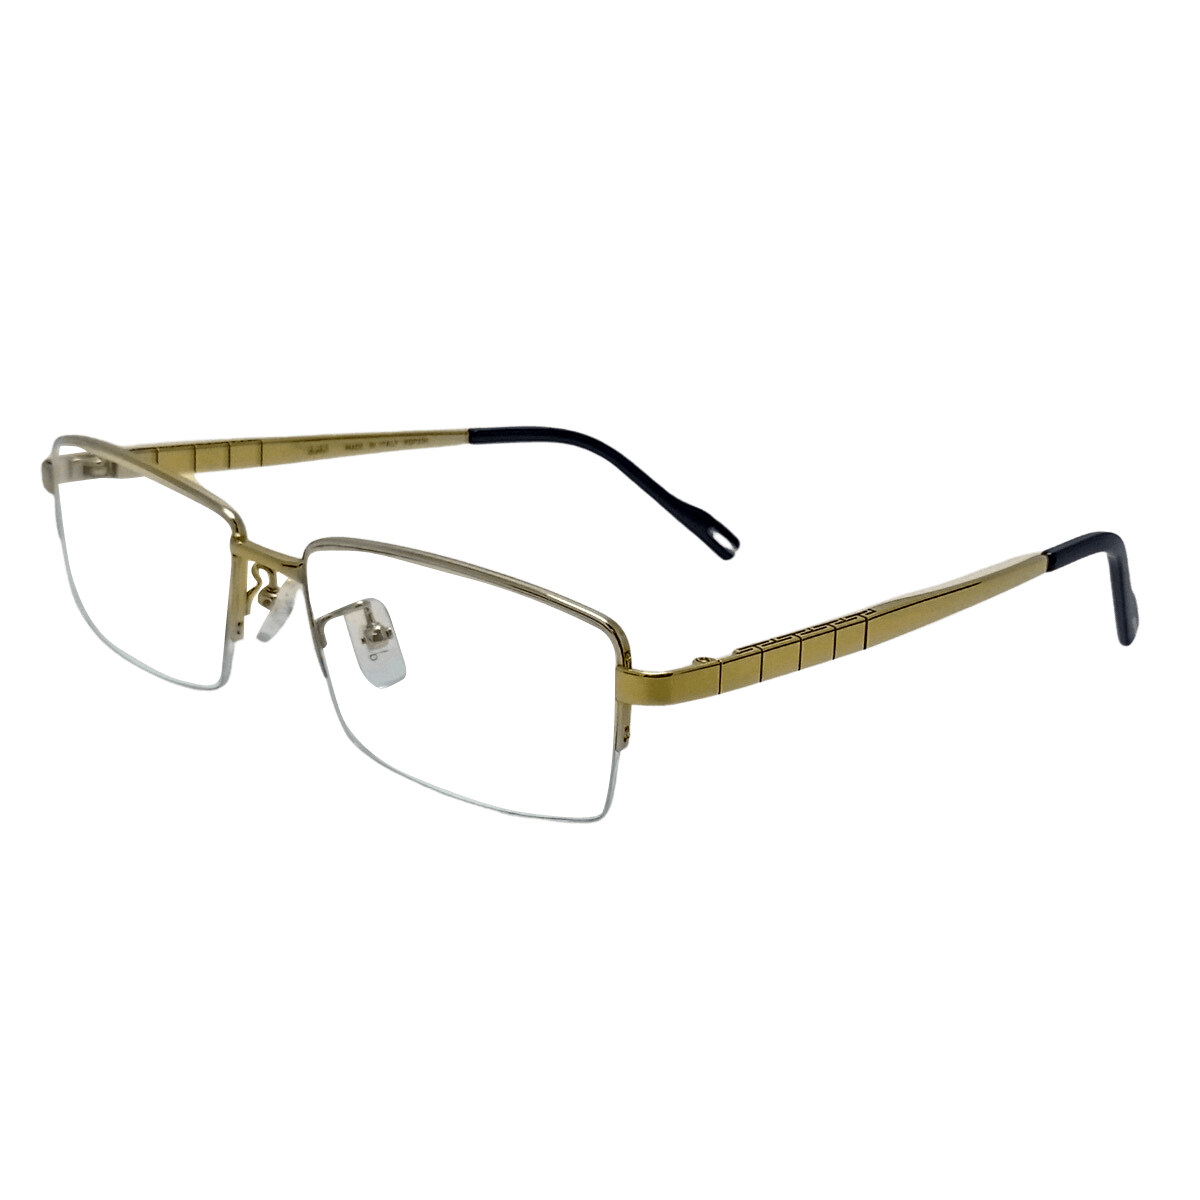 Buy Premium Quality Titanium Eyeglasses Frame from NineOptic.